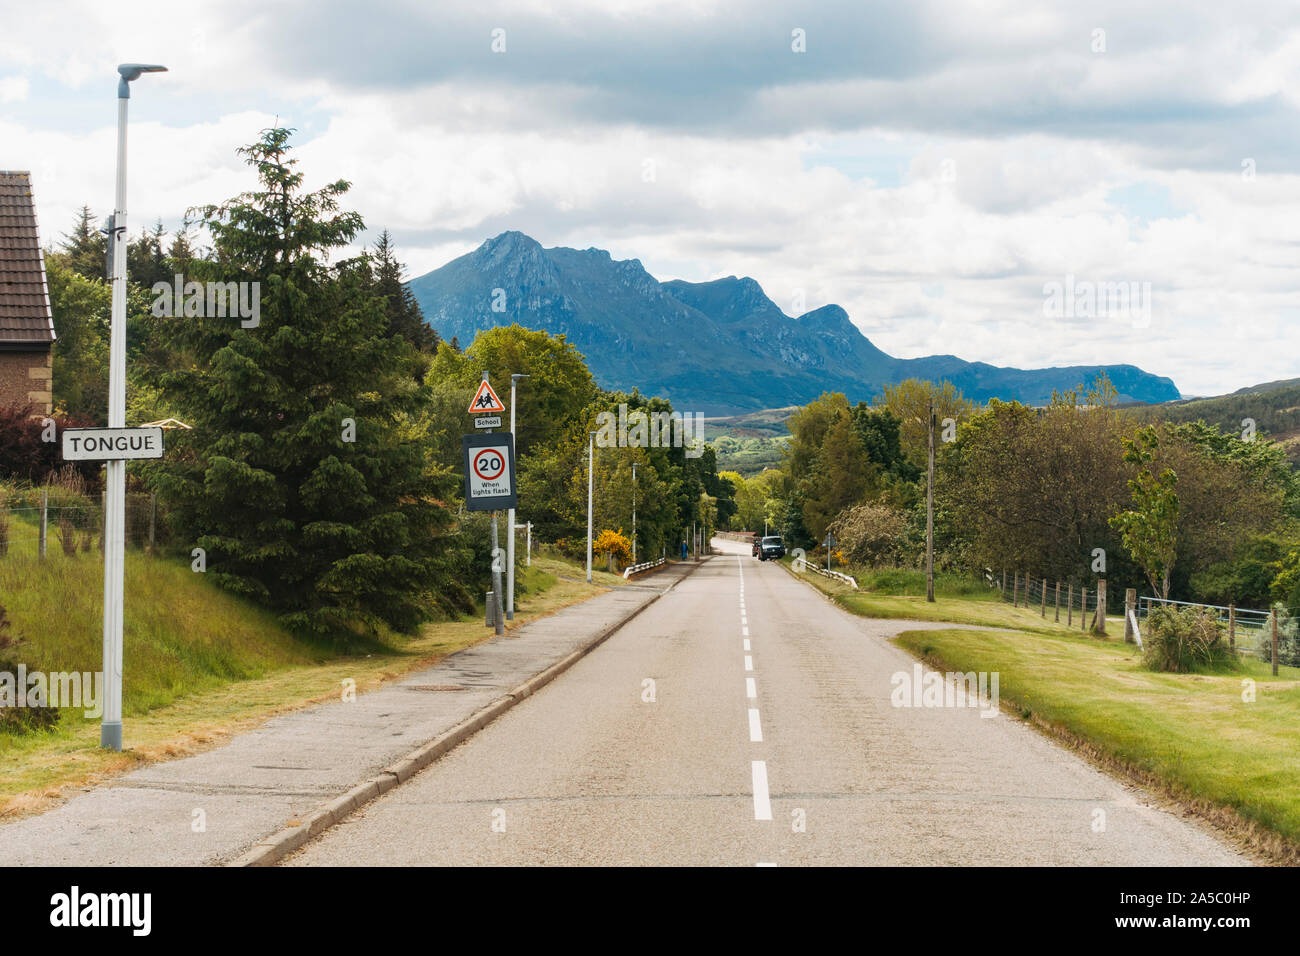 En regardant la route principale dans la langue, un village dans le nord-ouest de Highland, en Écosse. Un panneau routier affiche le nom de la ville Banque D'Images